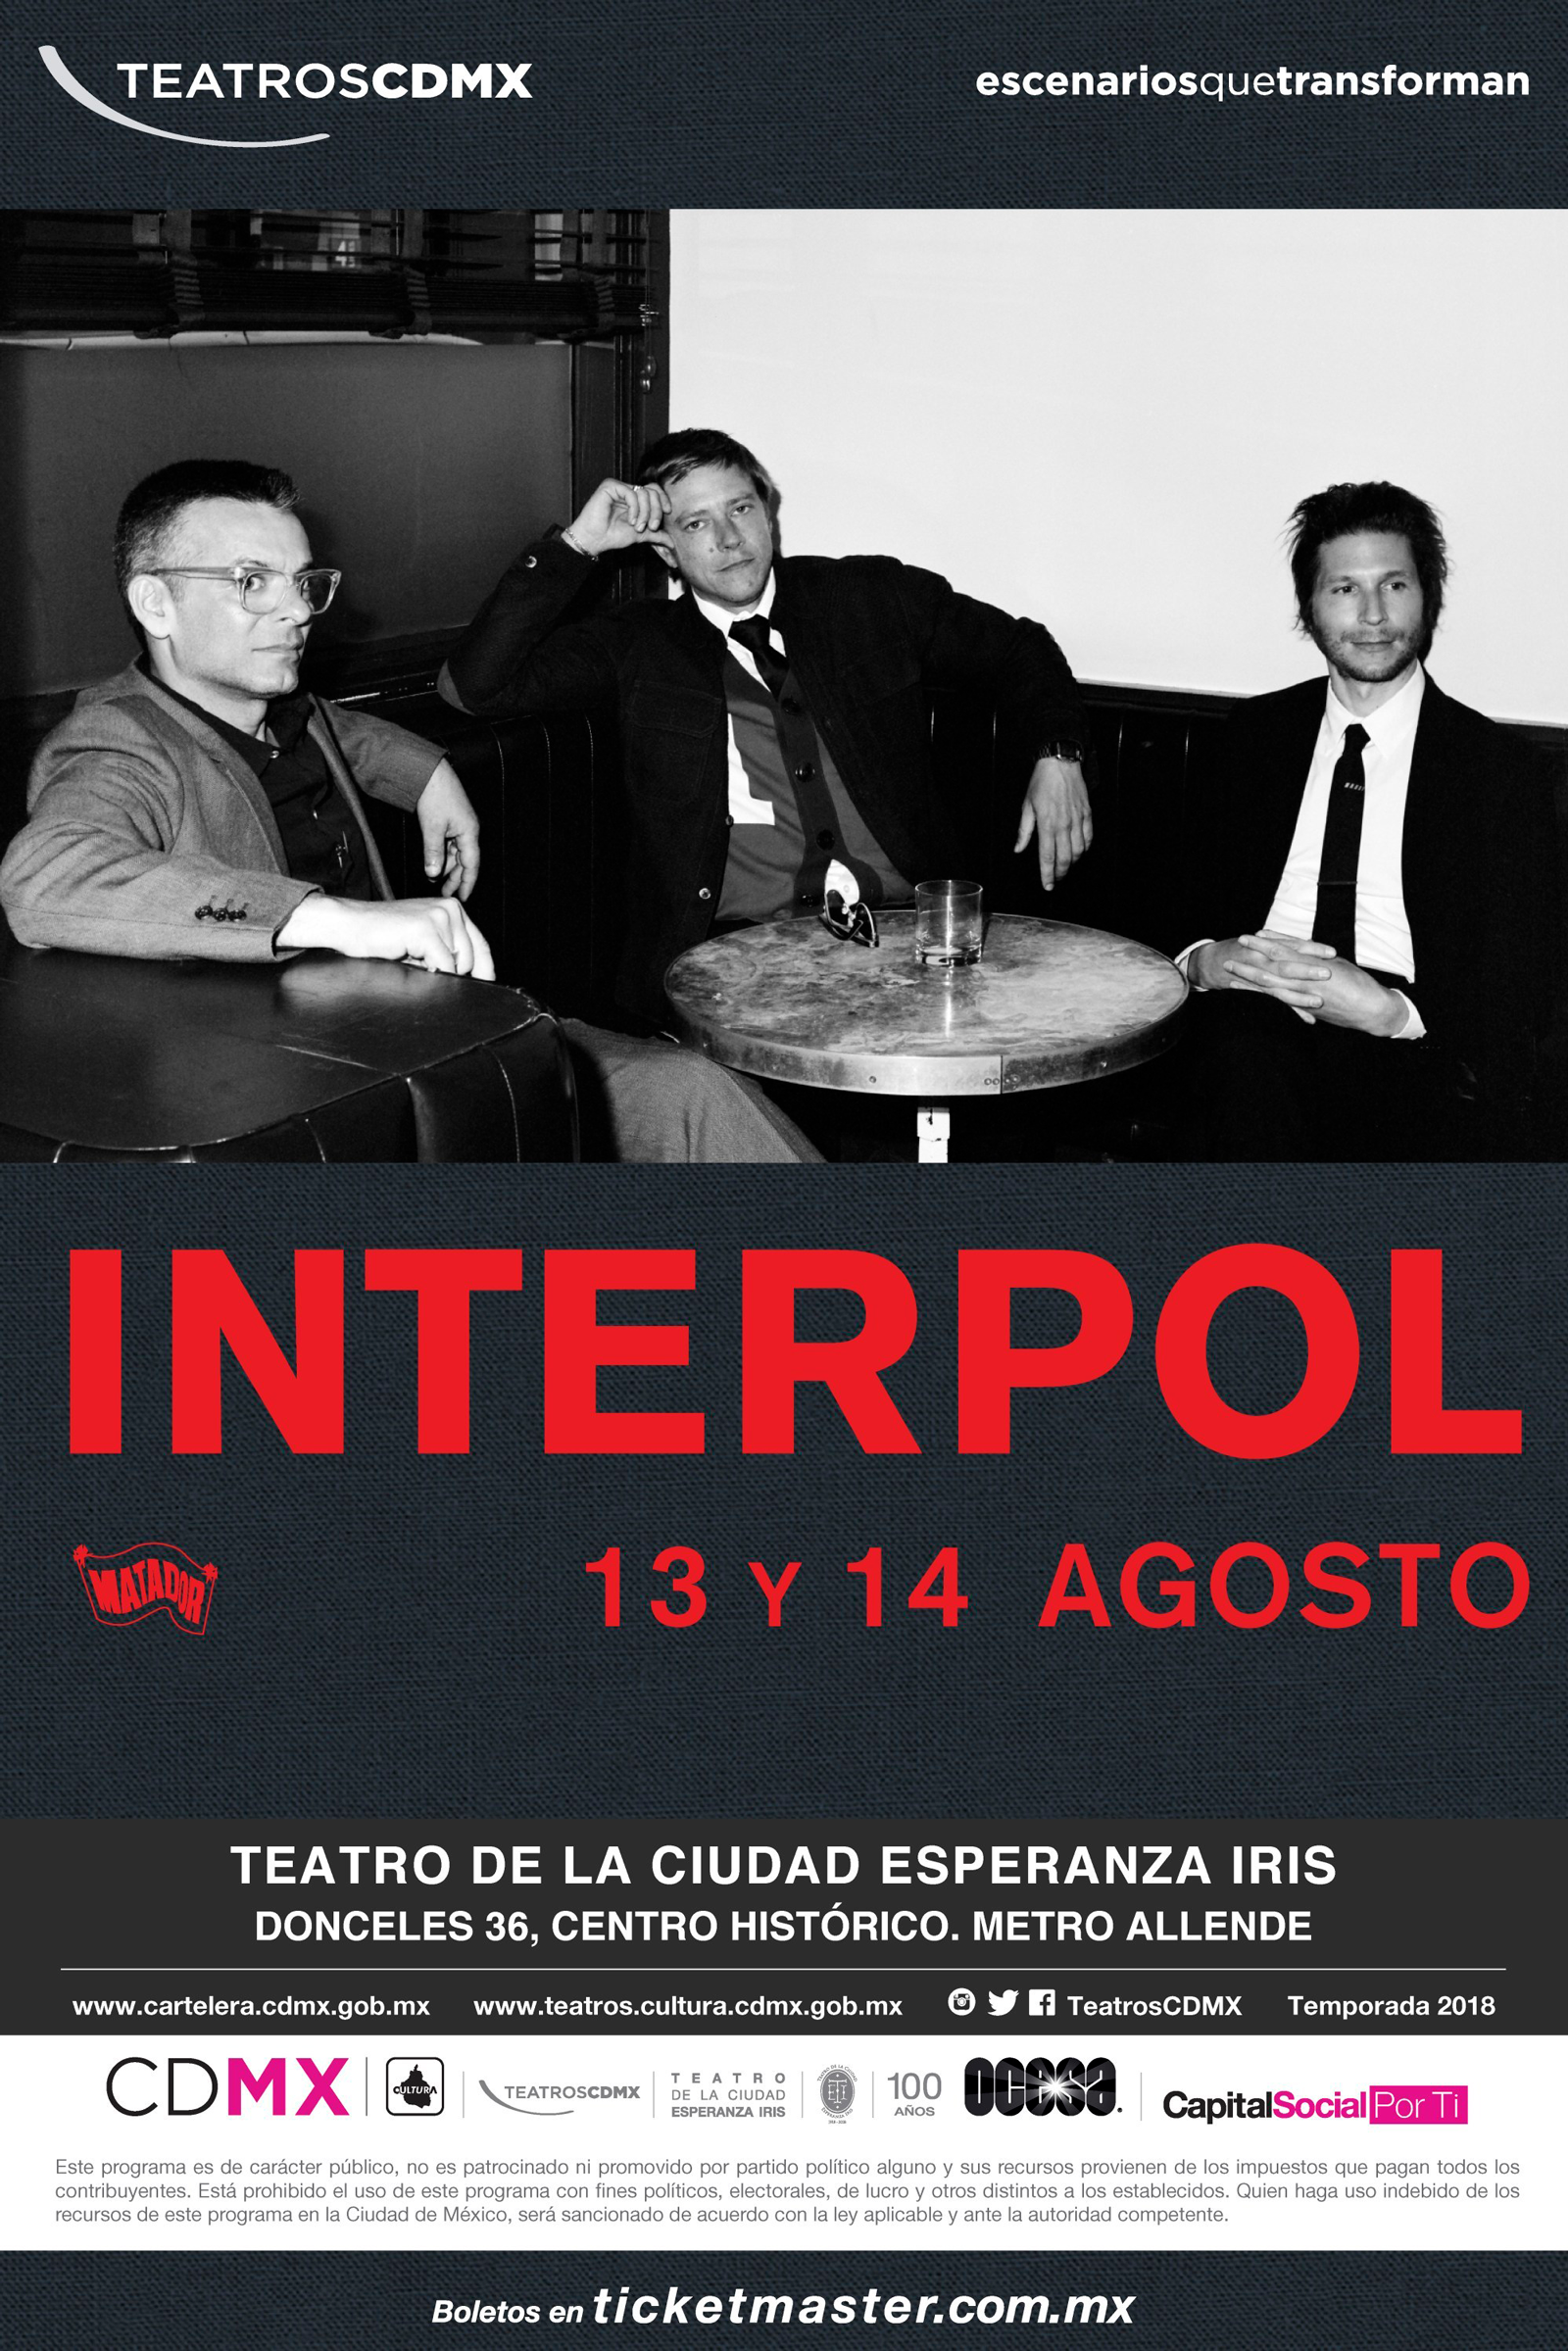 But here comes the fall! ¡Acá la boletiza para los conciertos de Interpol!